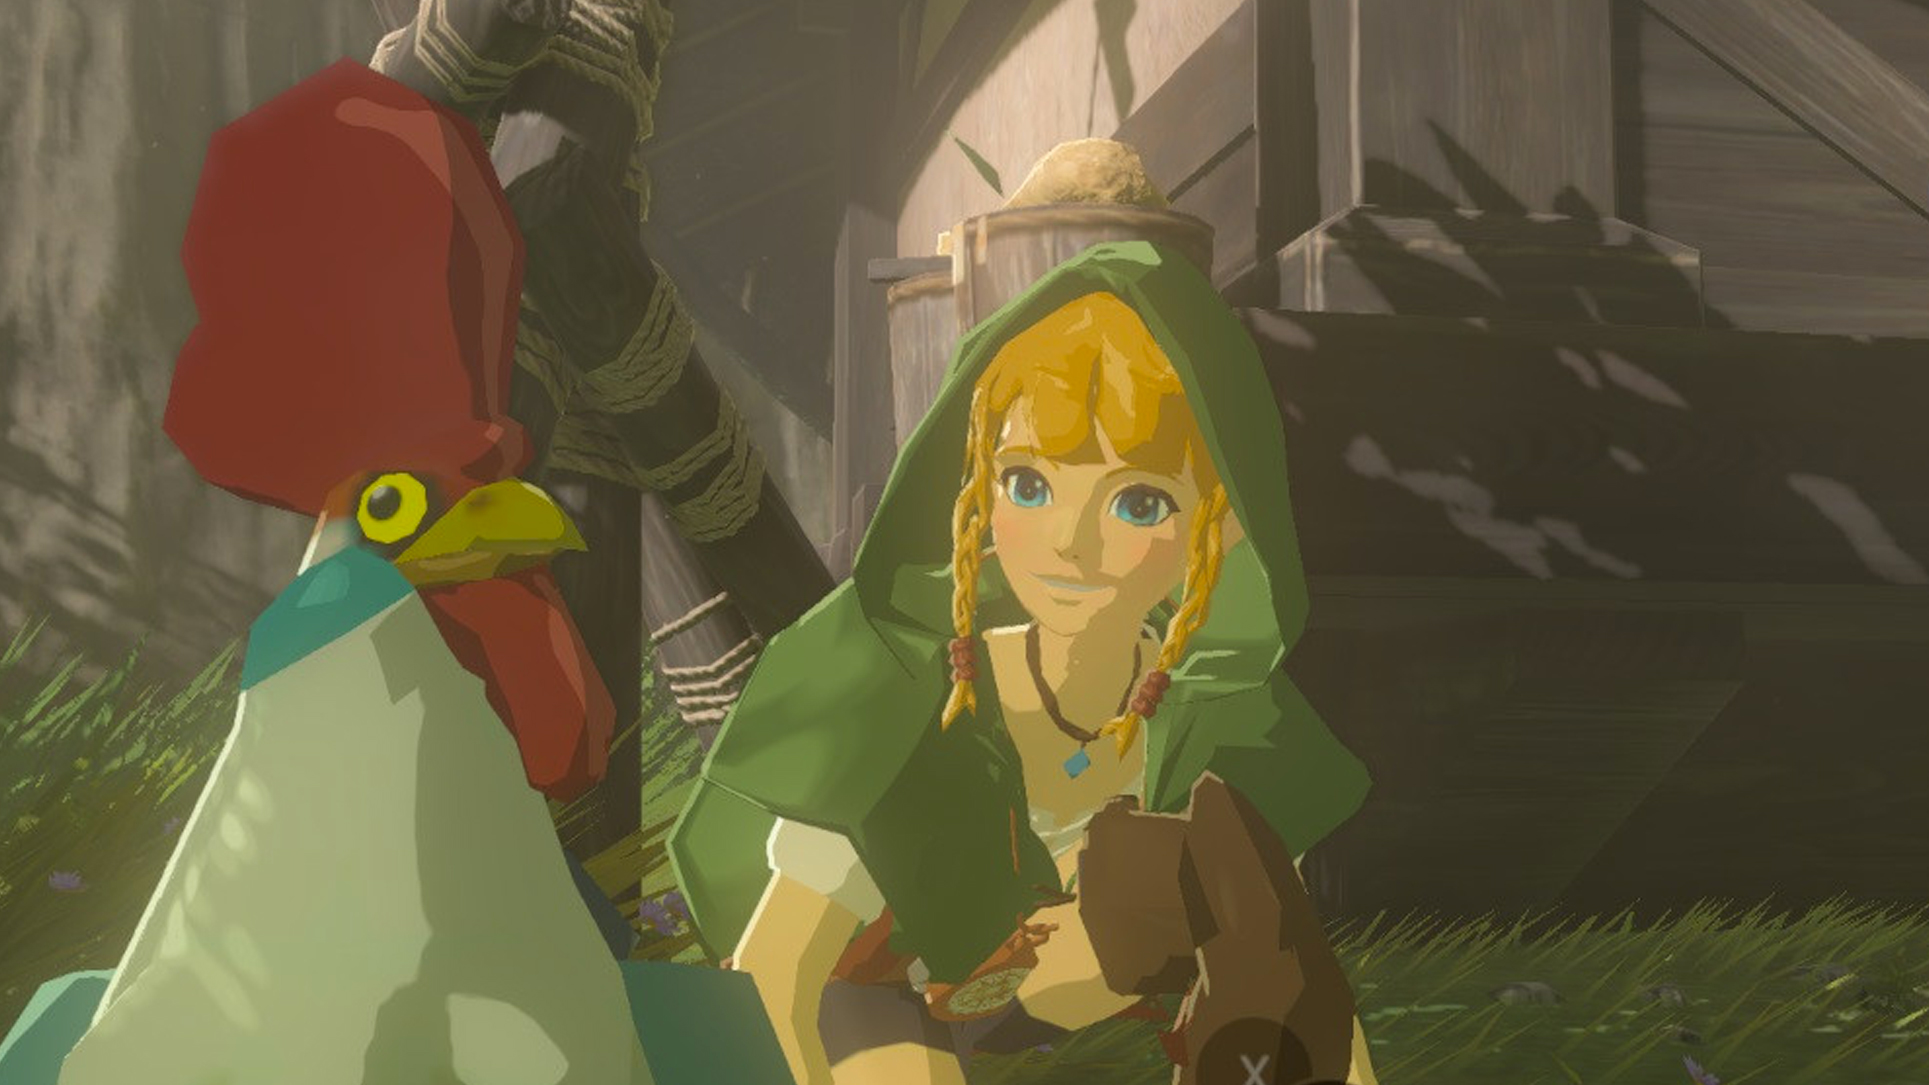 Zelda model nude